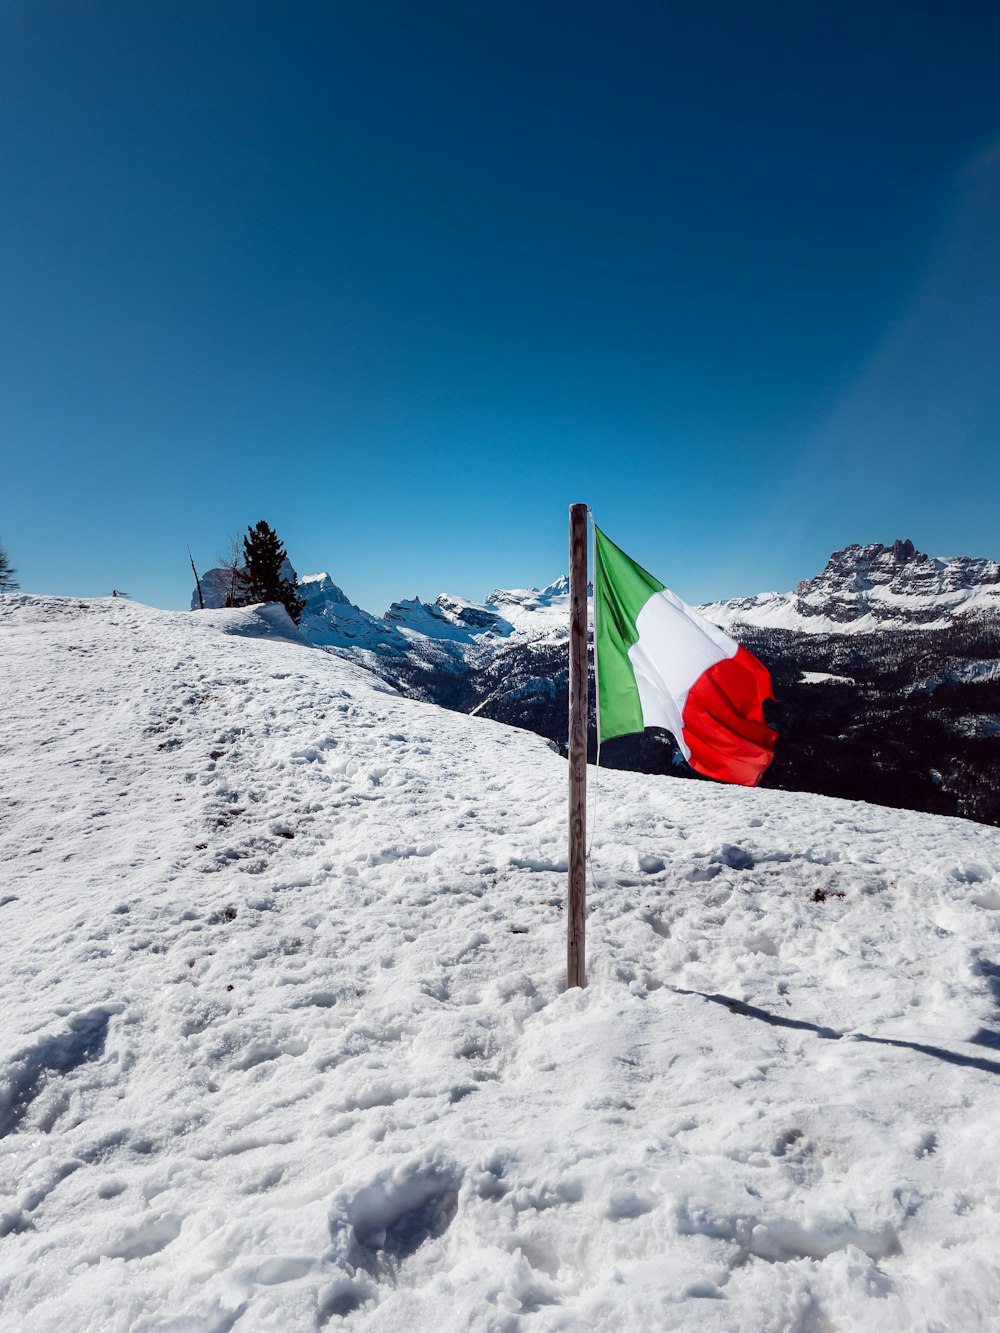 drapeau rouge, blanc et vert sur la montagne enneigée sous le ciel bleu pendant la journée